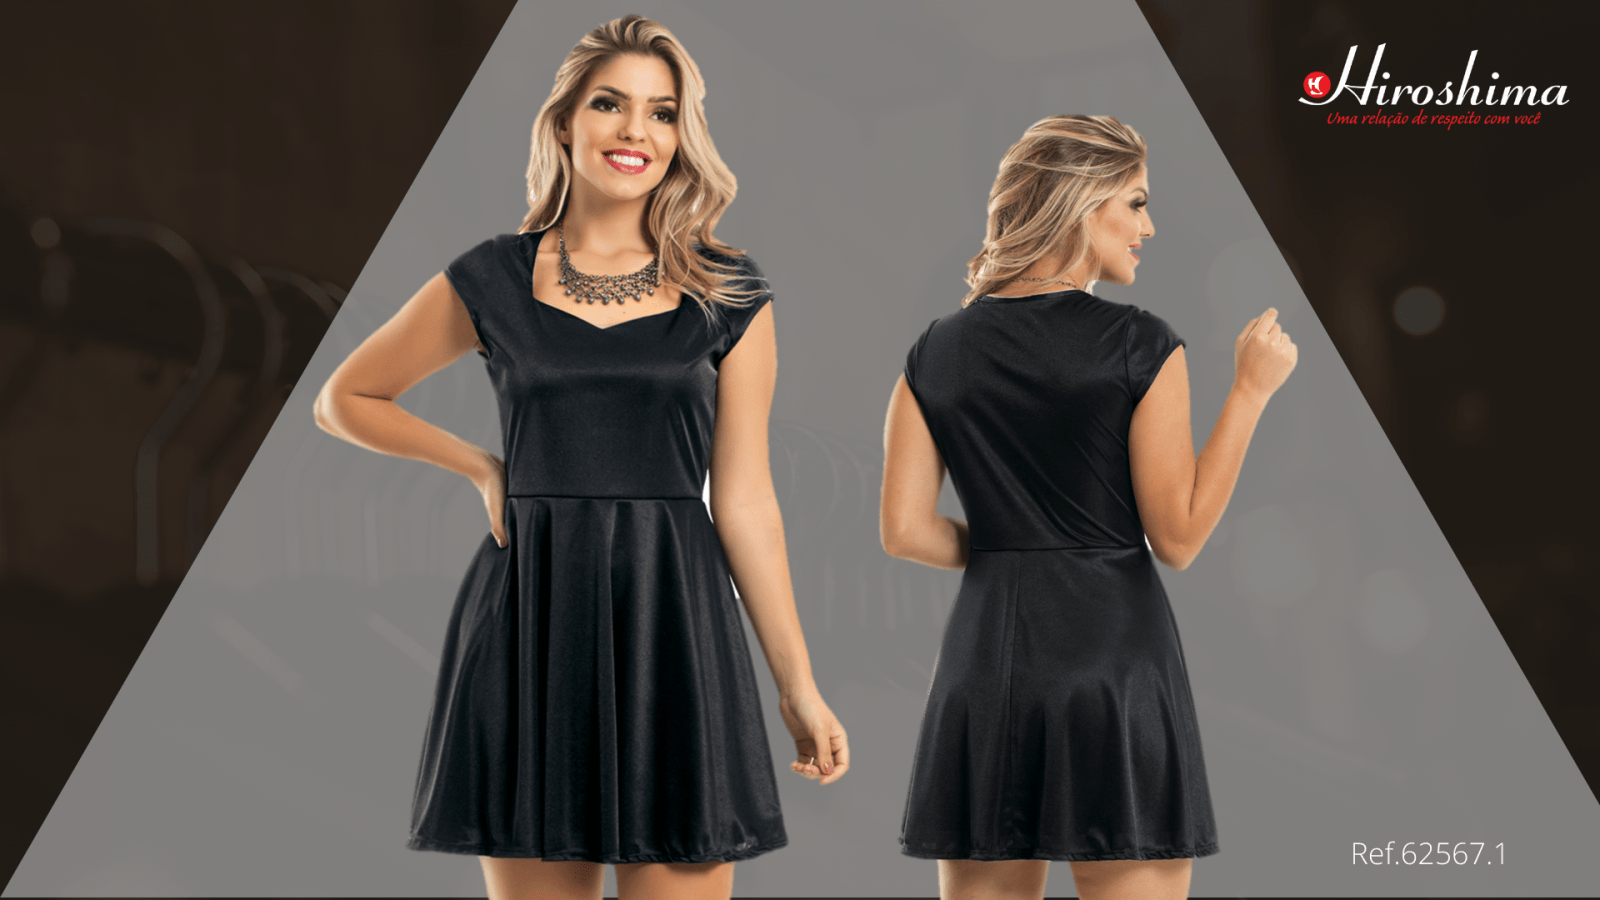 Vestido preto básico: beleza e simplicidade - vestido em cetim de malha ref 62567.1